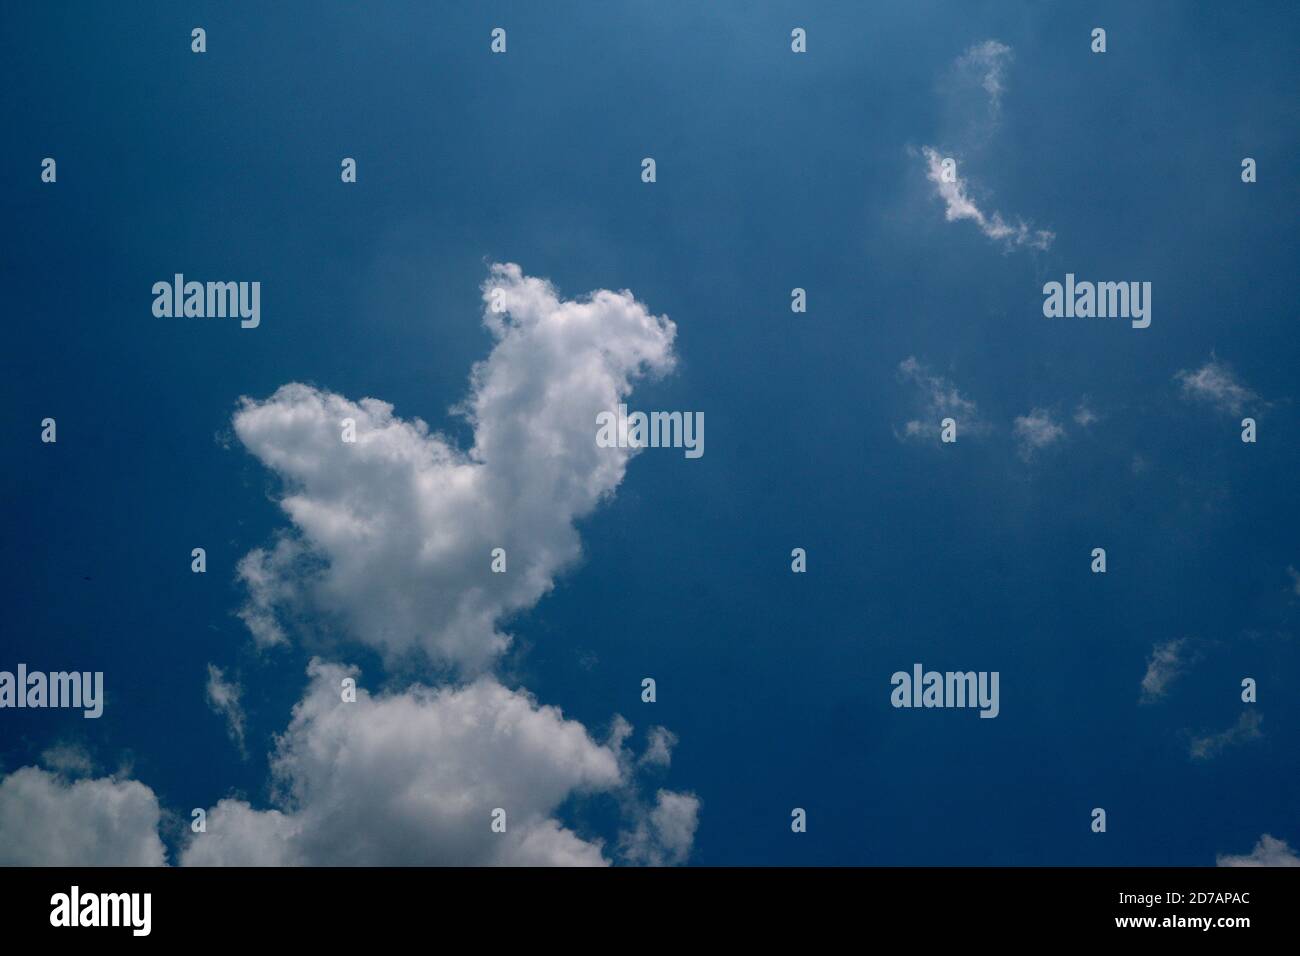 Schöner blauer Himmel Hintergrund mit weißen Wolken. Himmel und Wolken während des Tages im Sommer. Weiße flauschige Wolken in den blauen Himmel. Stockfoto